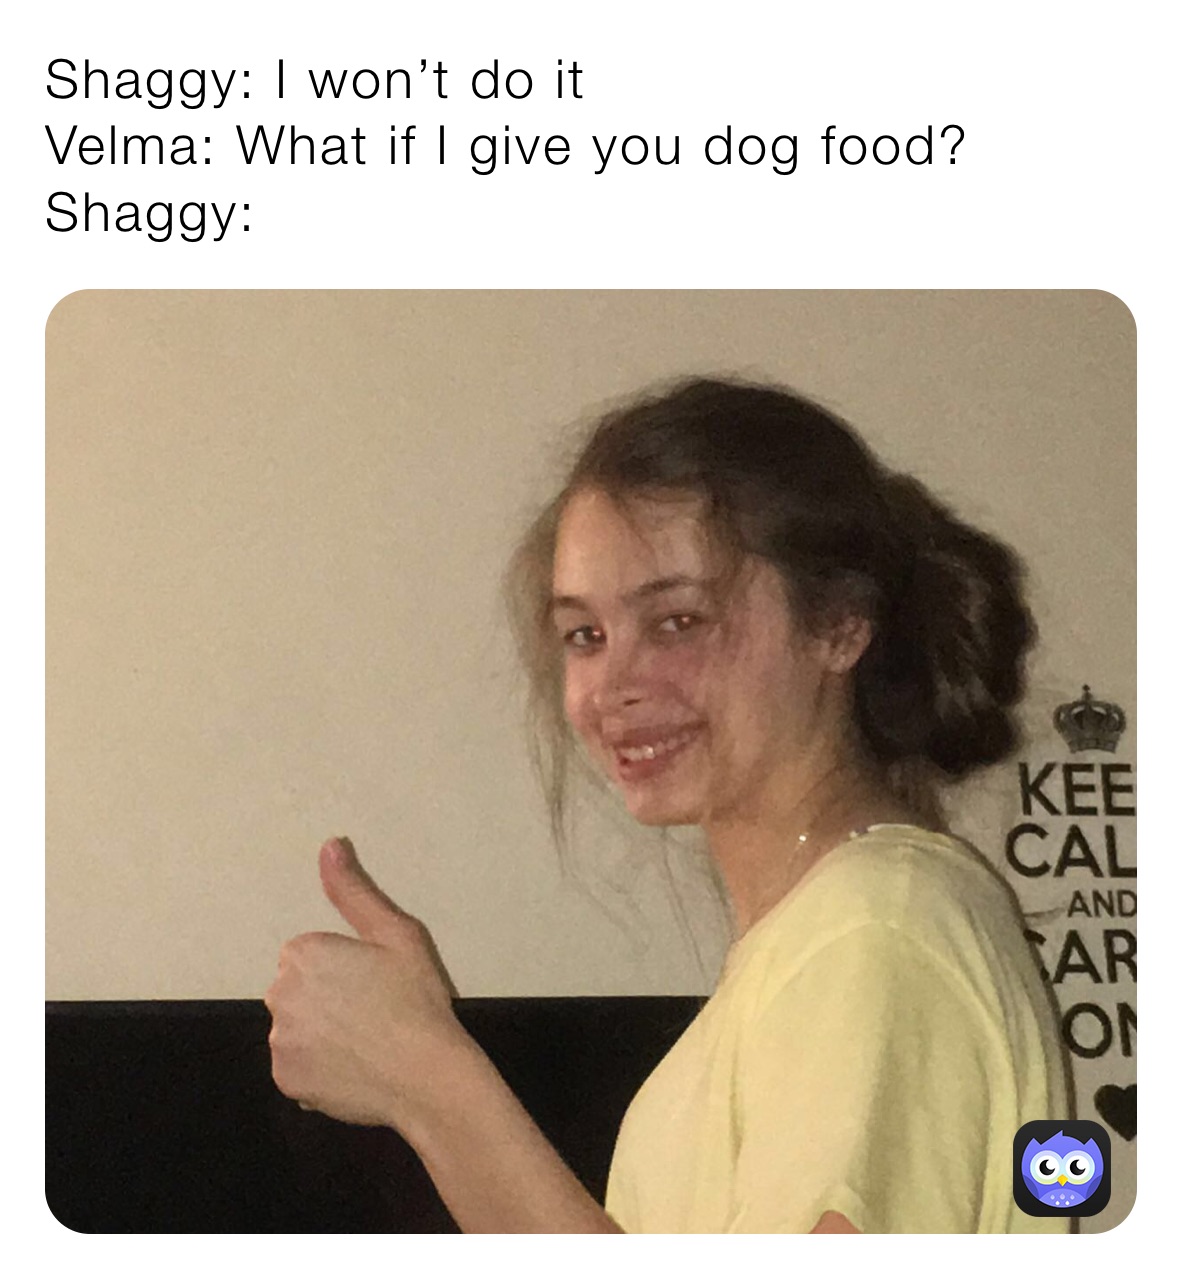 Shaggy: I won’t do it
Velma: What if I give you dog food?
Shaggy: